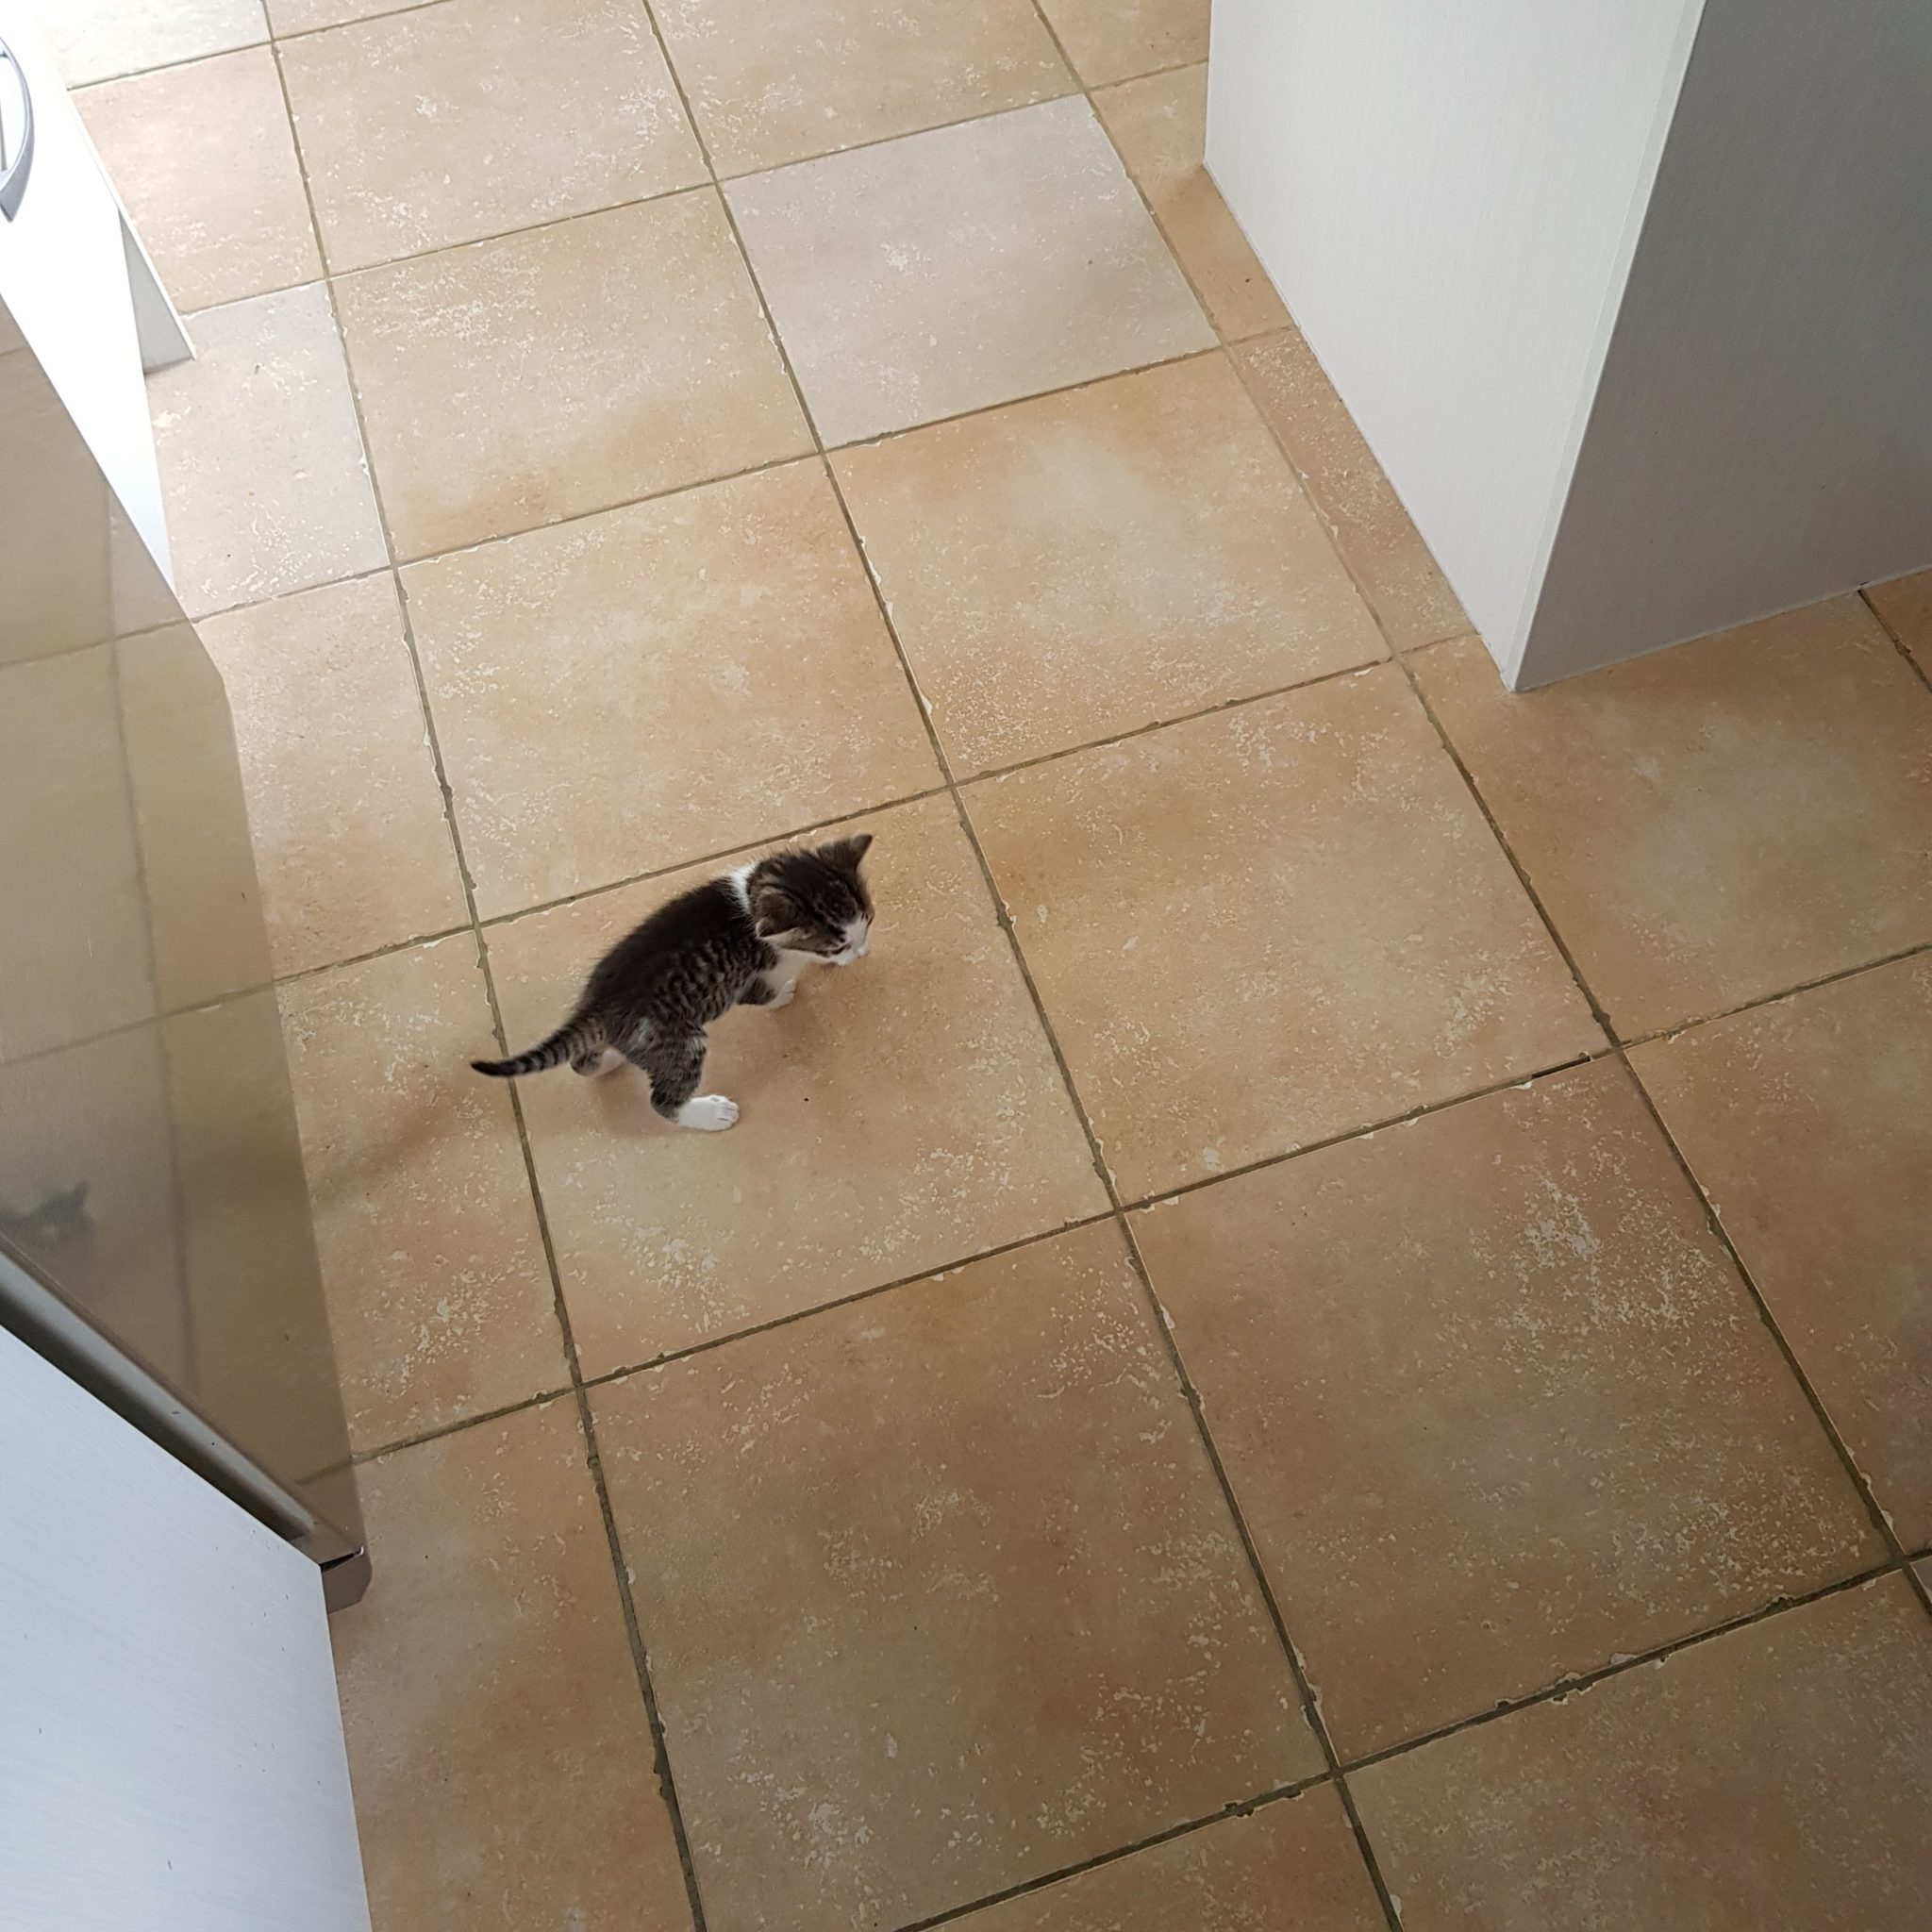 Kittens on the kitchen floor